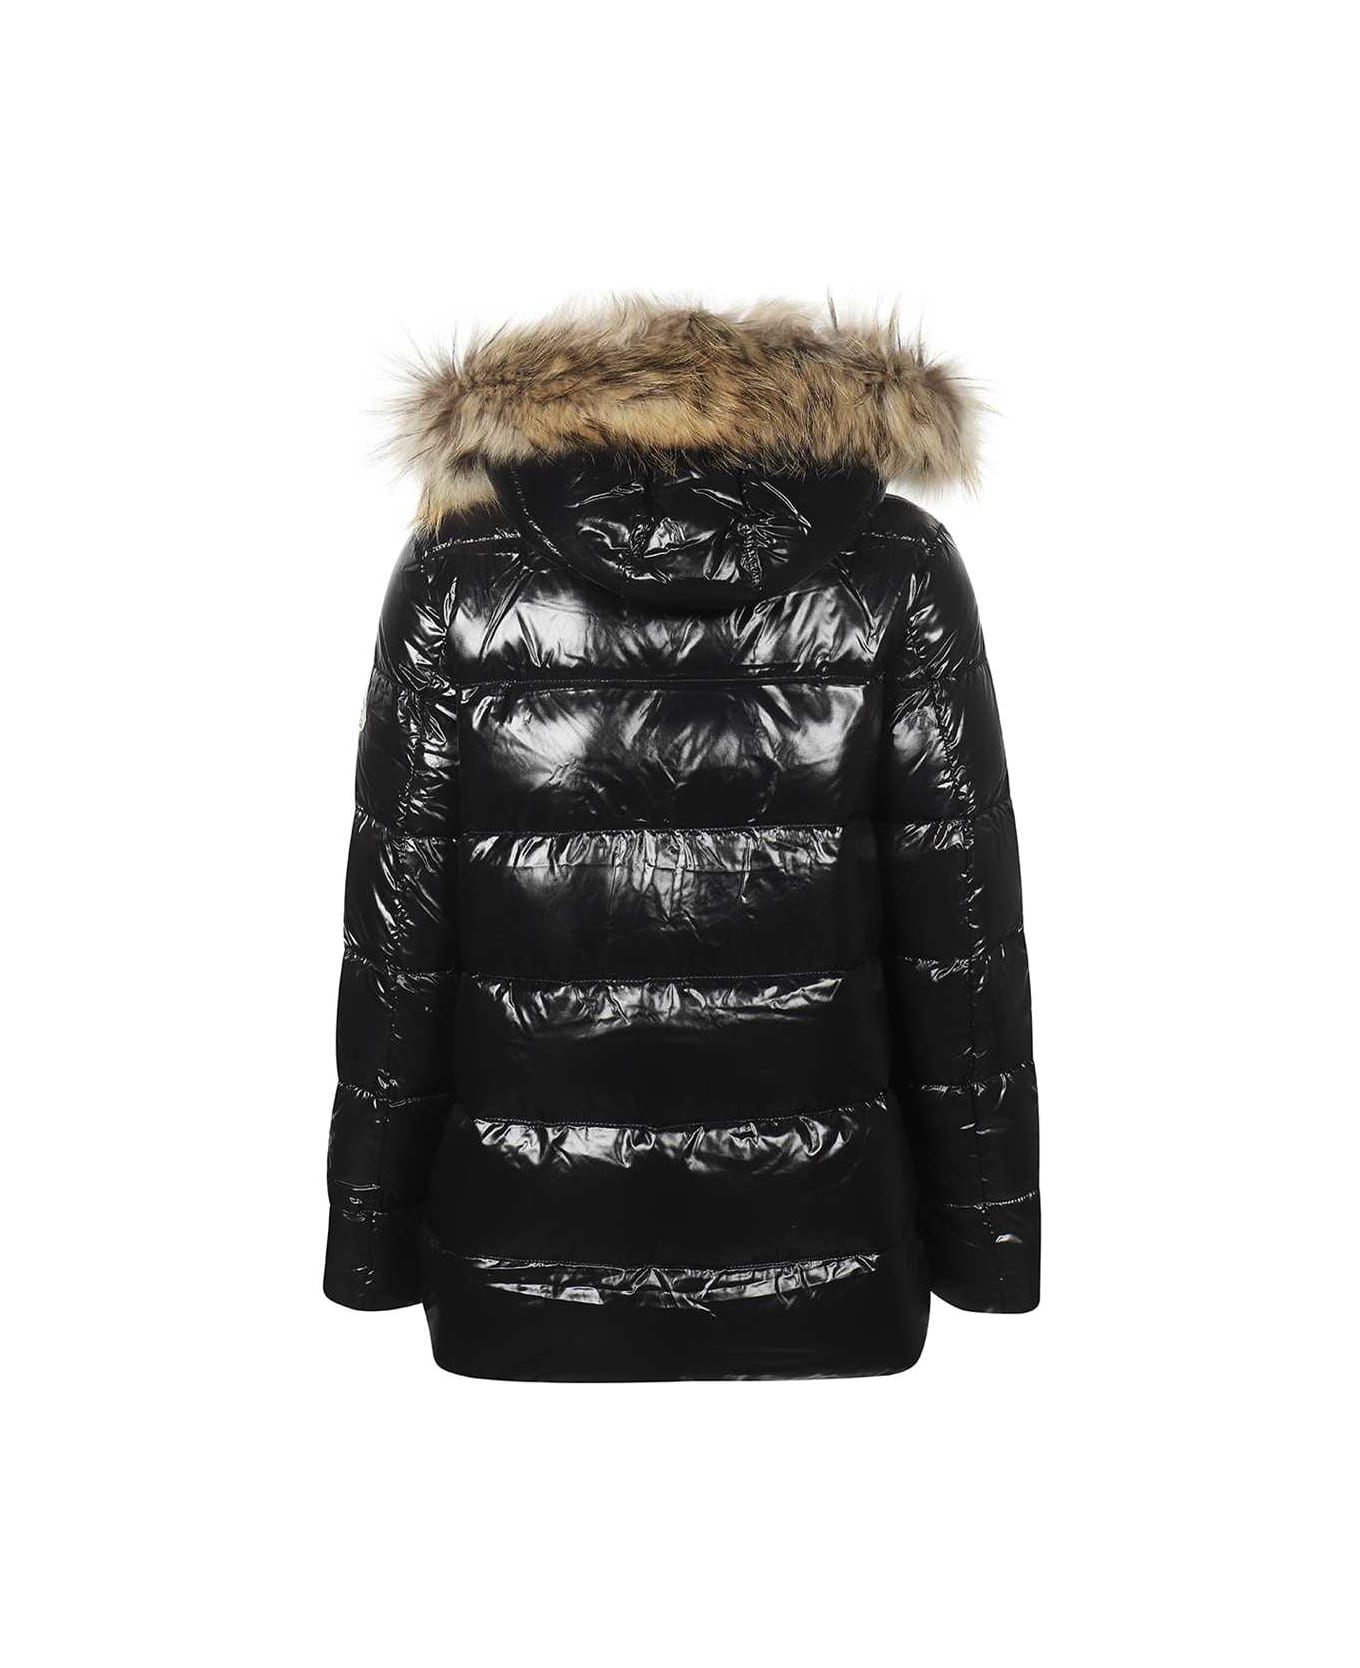 Pyrenex Fur Trimmed Hood Down Jacket - black コート